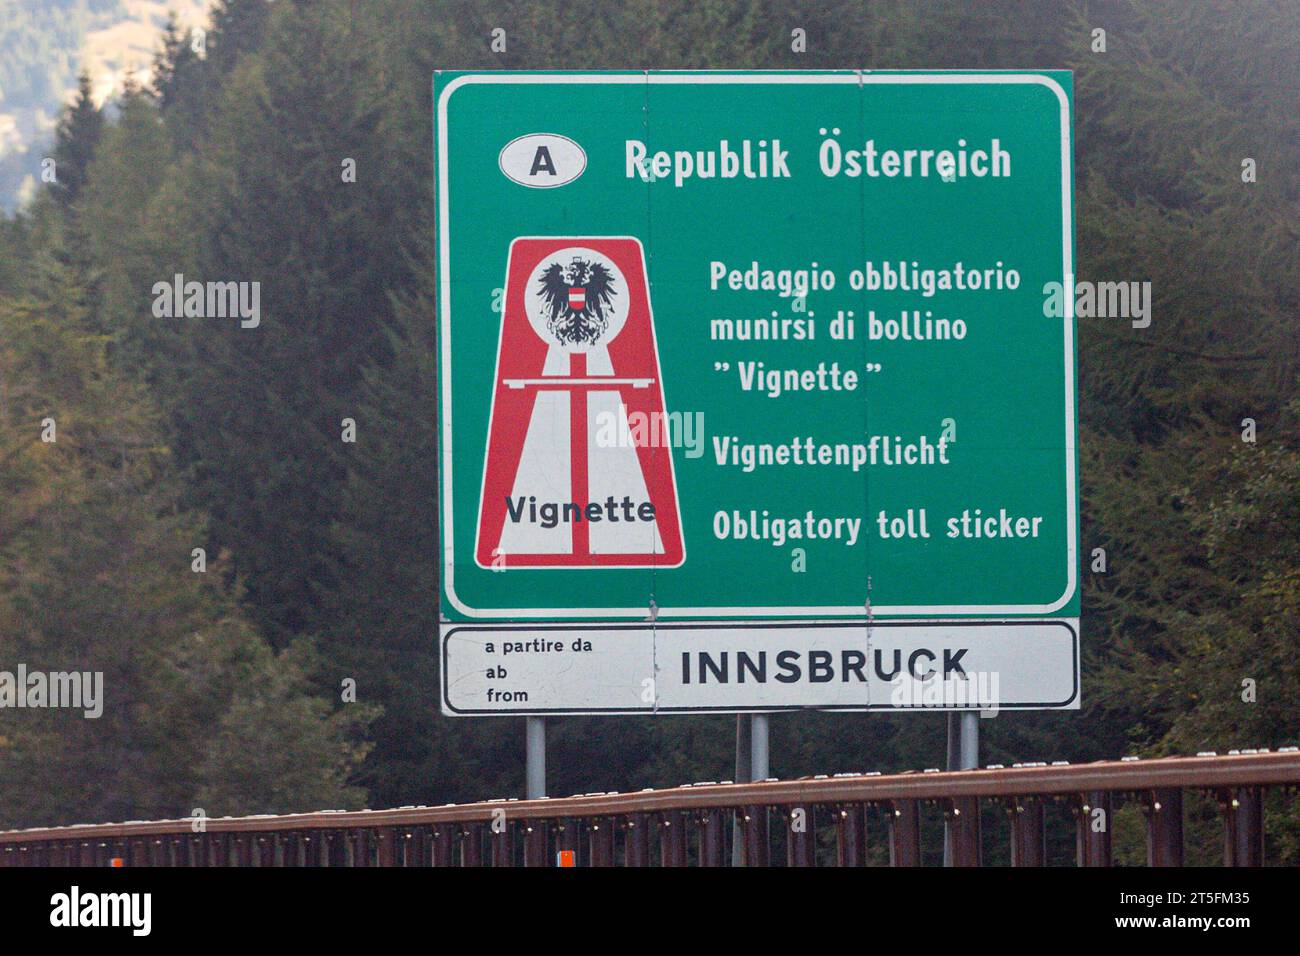 Schild Vignettenpflicht auf der A13 in Österreich bei Innsbruck. Vignettepflicht *** Vignettepflicht auf der A13 in Österreich bei Innsbruck Vignette-Verpflichtung Kredit: Imago/Alamy Live News Stockfoto